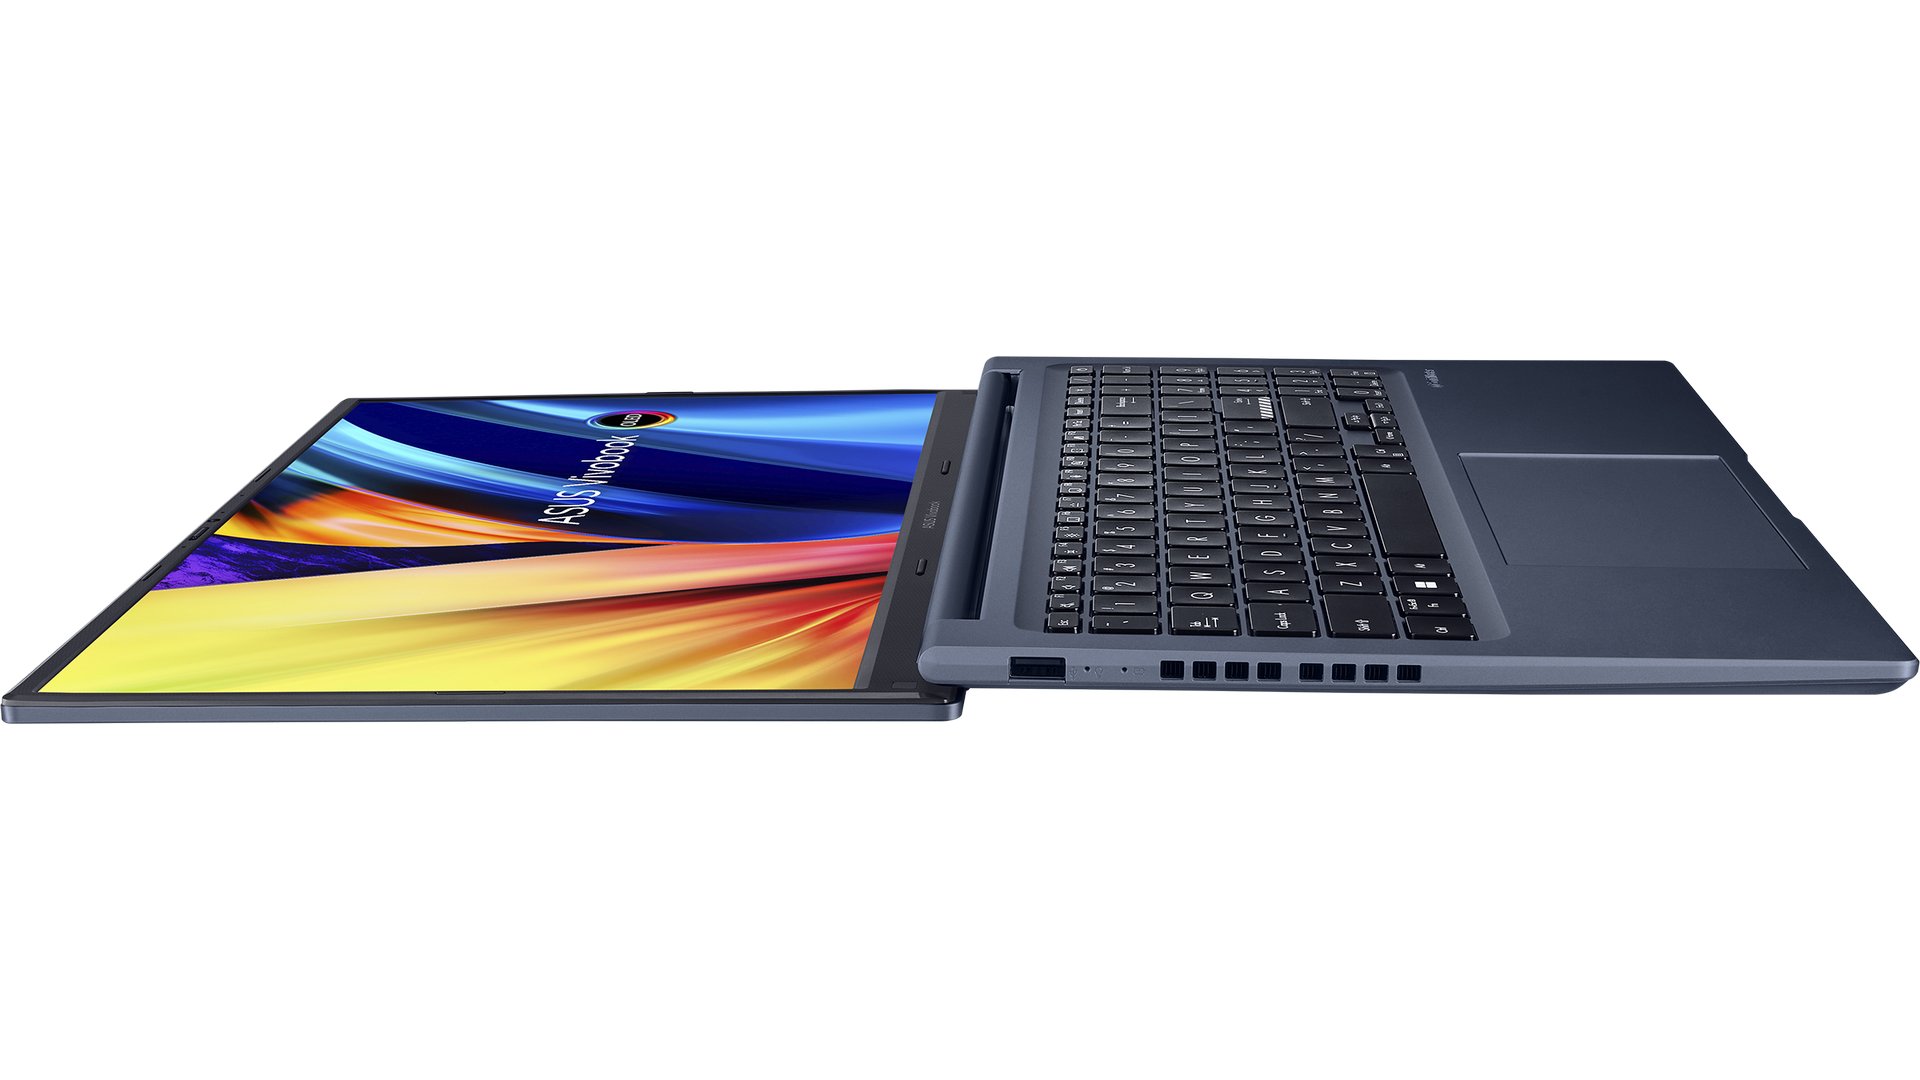 Laptop ASUS Vivobook 15X OLED: Bạn muốn tìm kiếm một chiếc laptop với màn hình OLED đẹp mắt và hiệu năng cao để giúp bạn làm việc và giải trí? Laptop ASUS Vivobook 15X OLED có màn hình lớn, hiệu năng đáng kinh ngạc và bàn phím tiện lợi, giúp bạn dễ dàng làm việc và giải trí mọi lúc, mọi nơi.